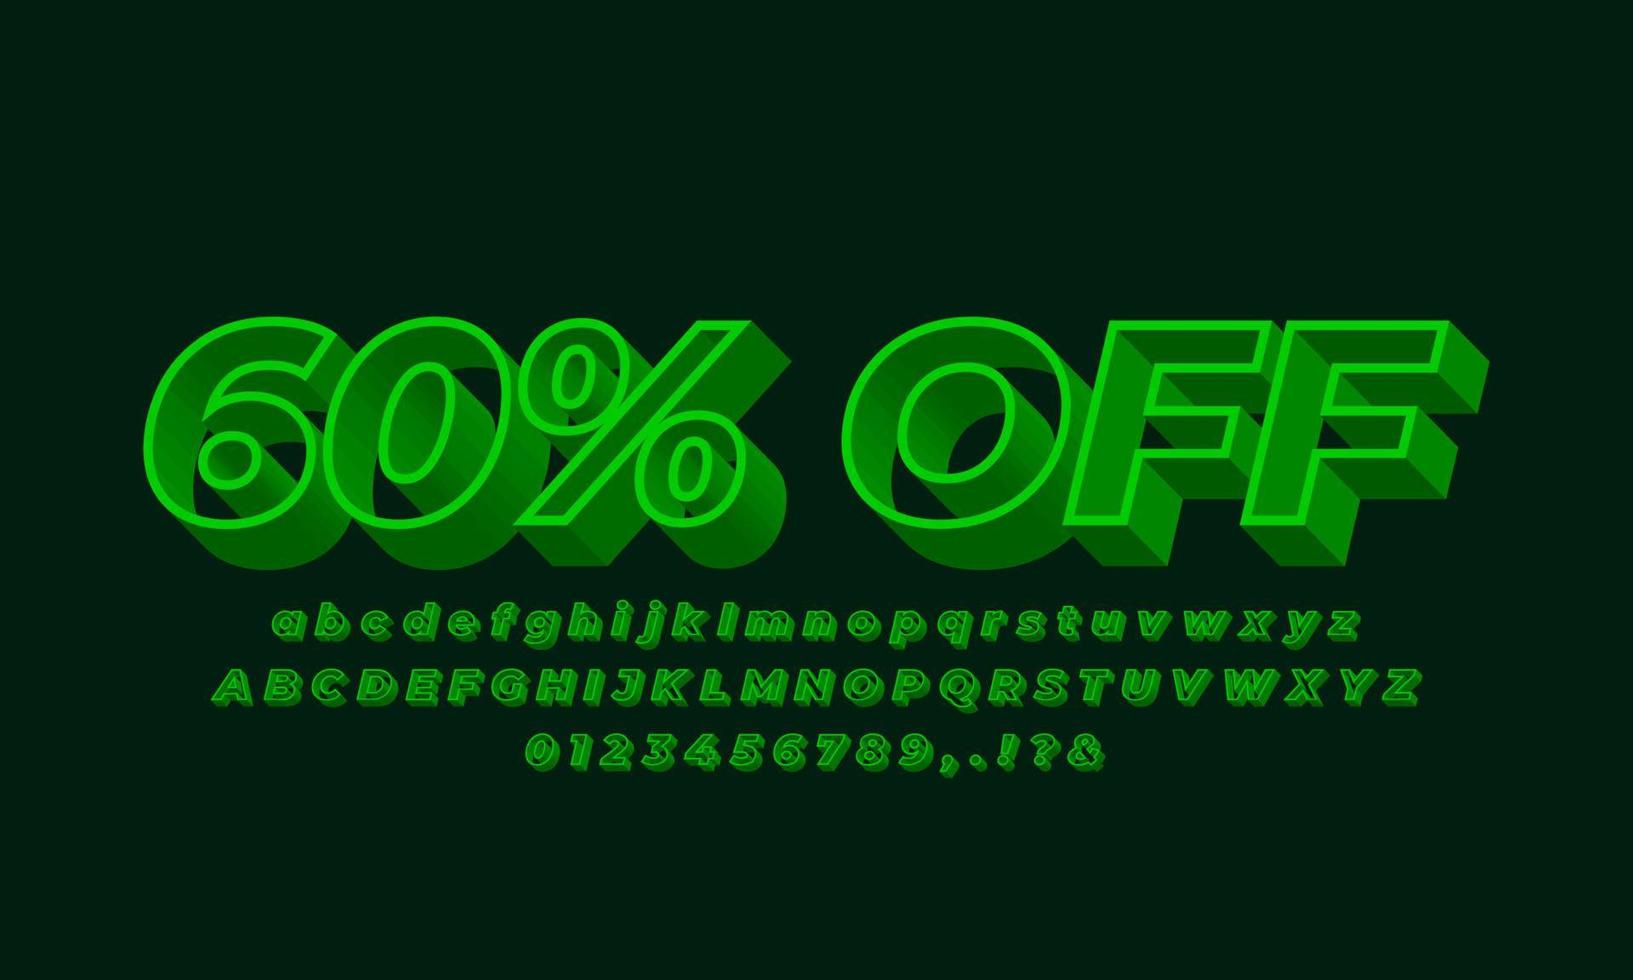 60 percent  off sale text font 3d green light vector